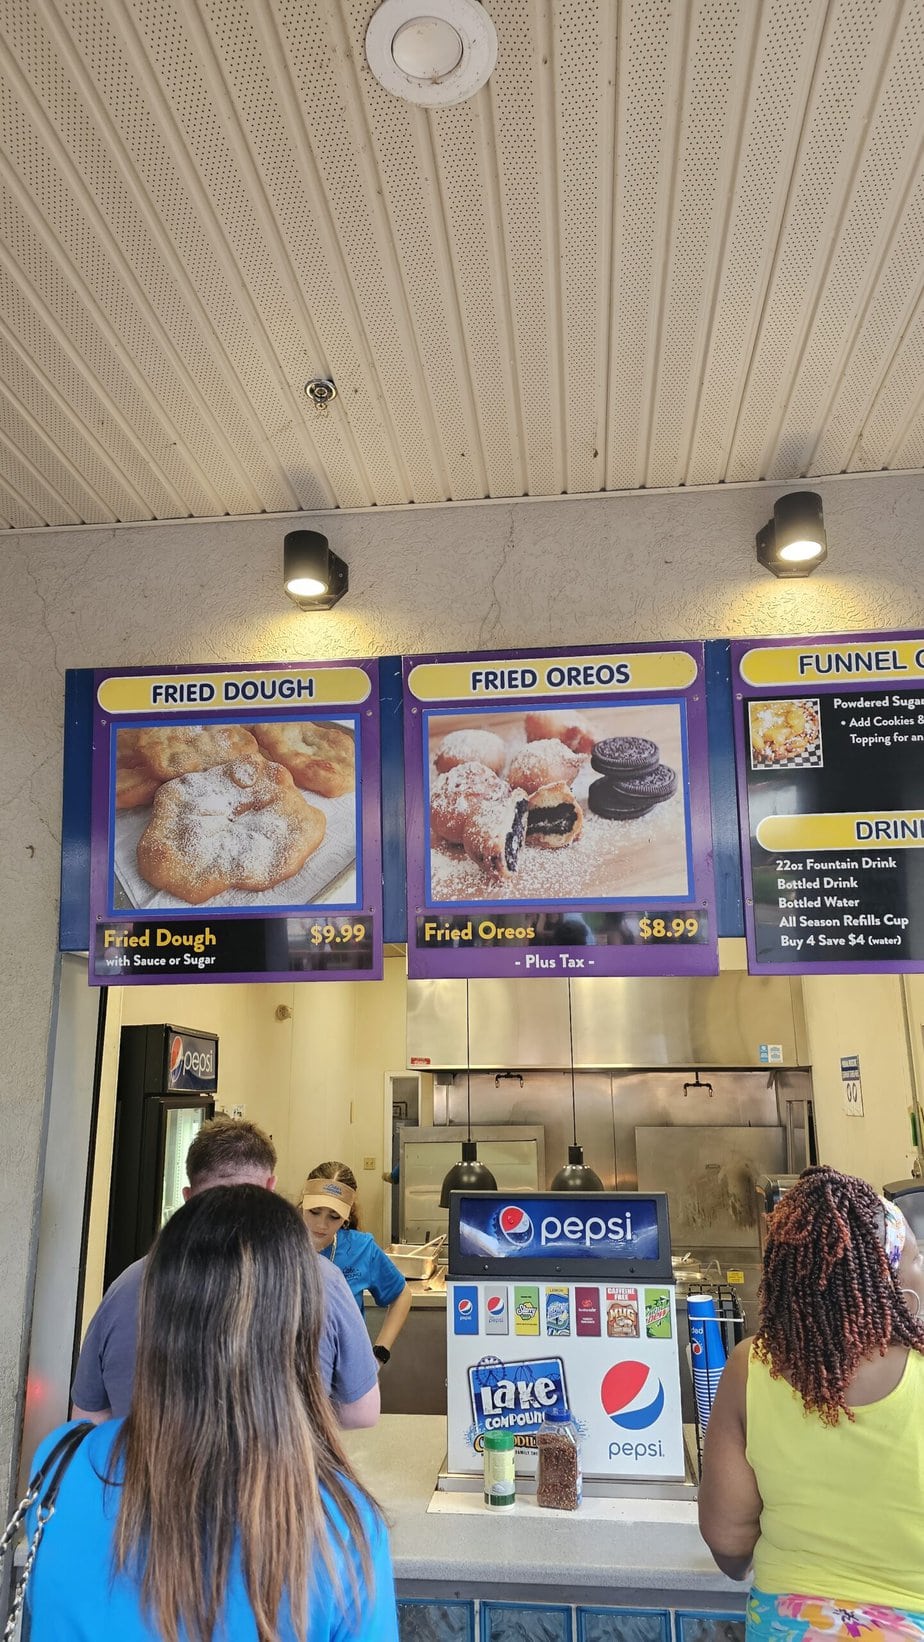 stand vendant des oréos frits au parc d'attractions Lake compounce